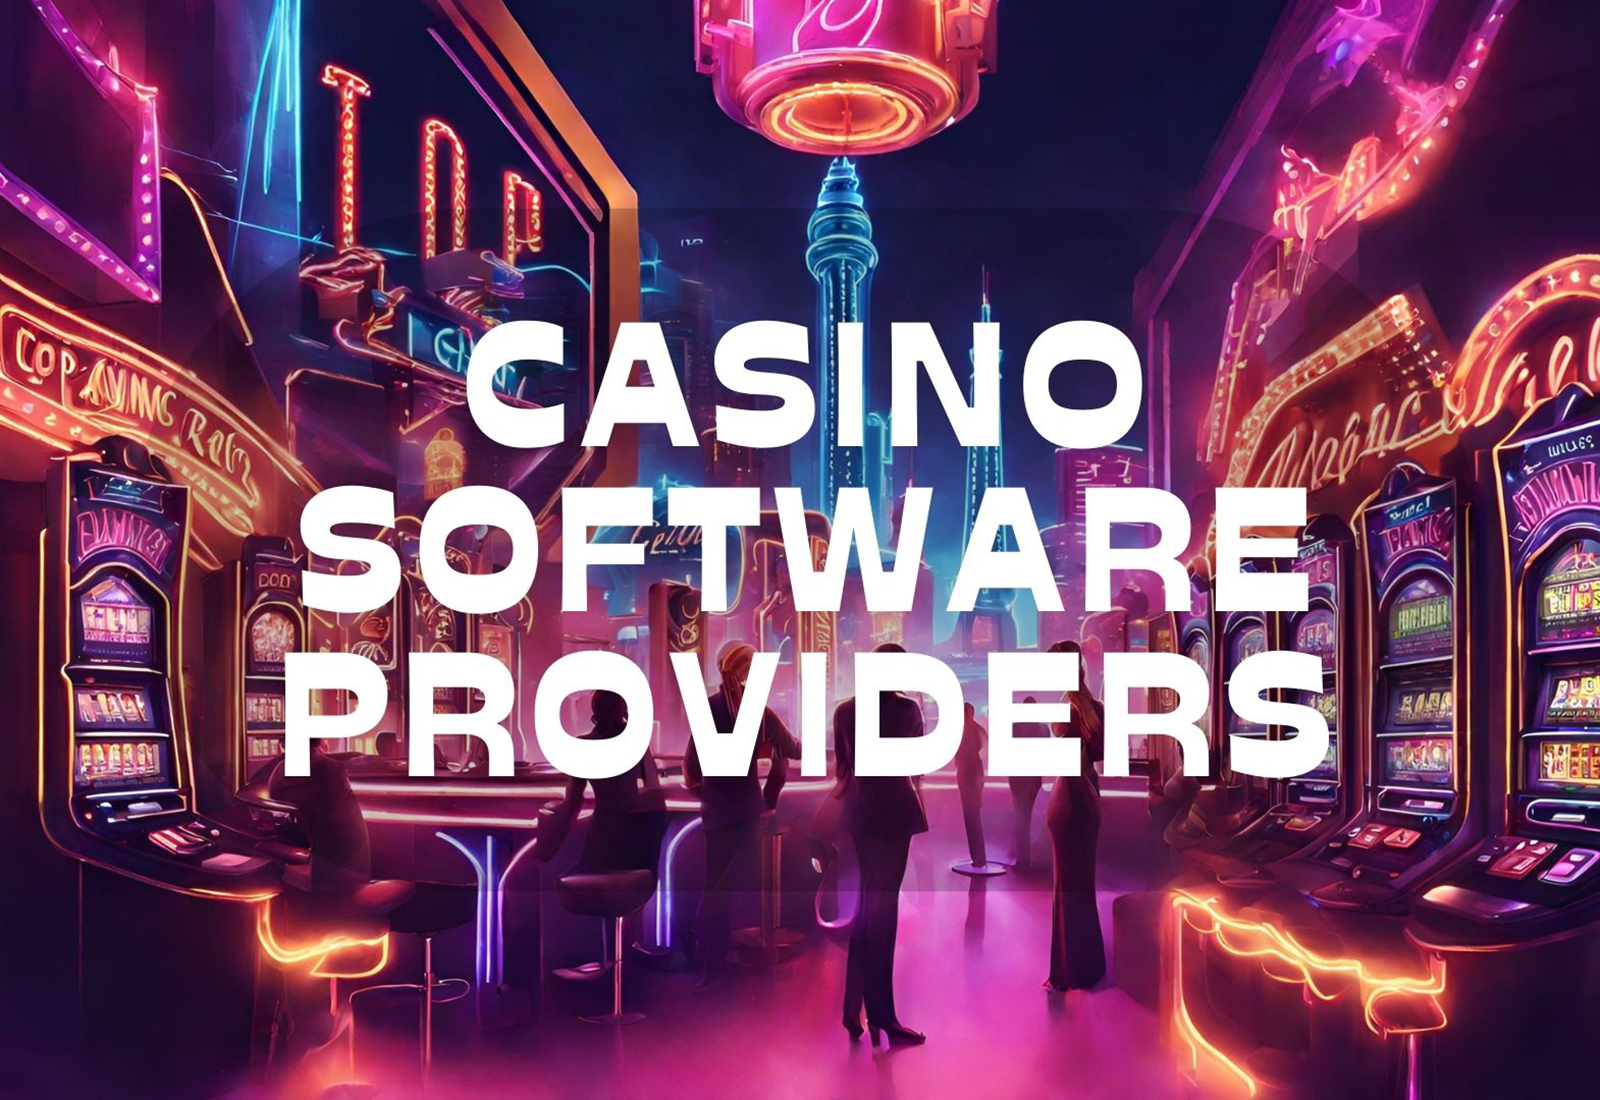 Casino Software Providers